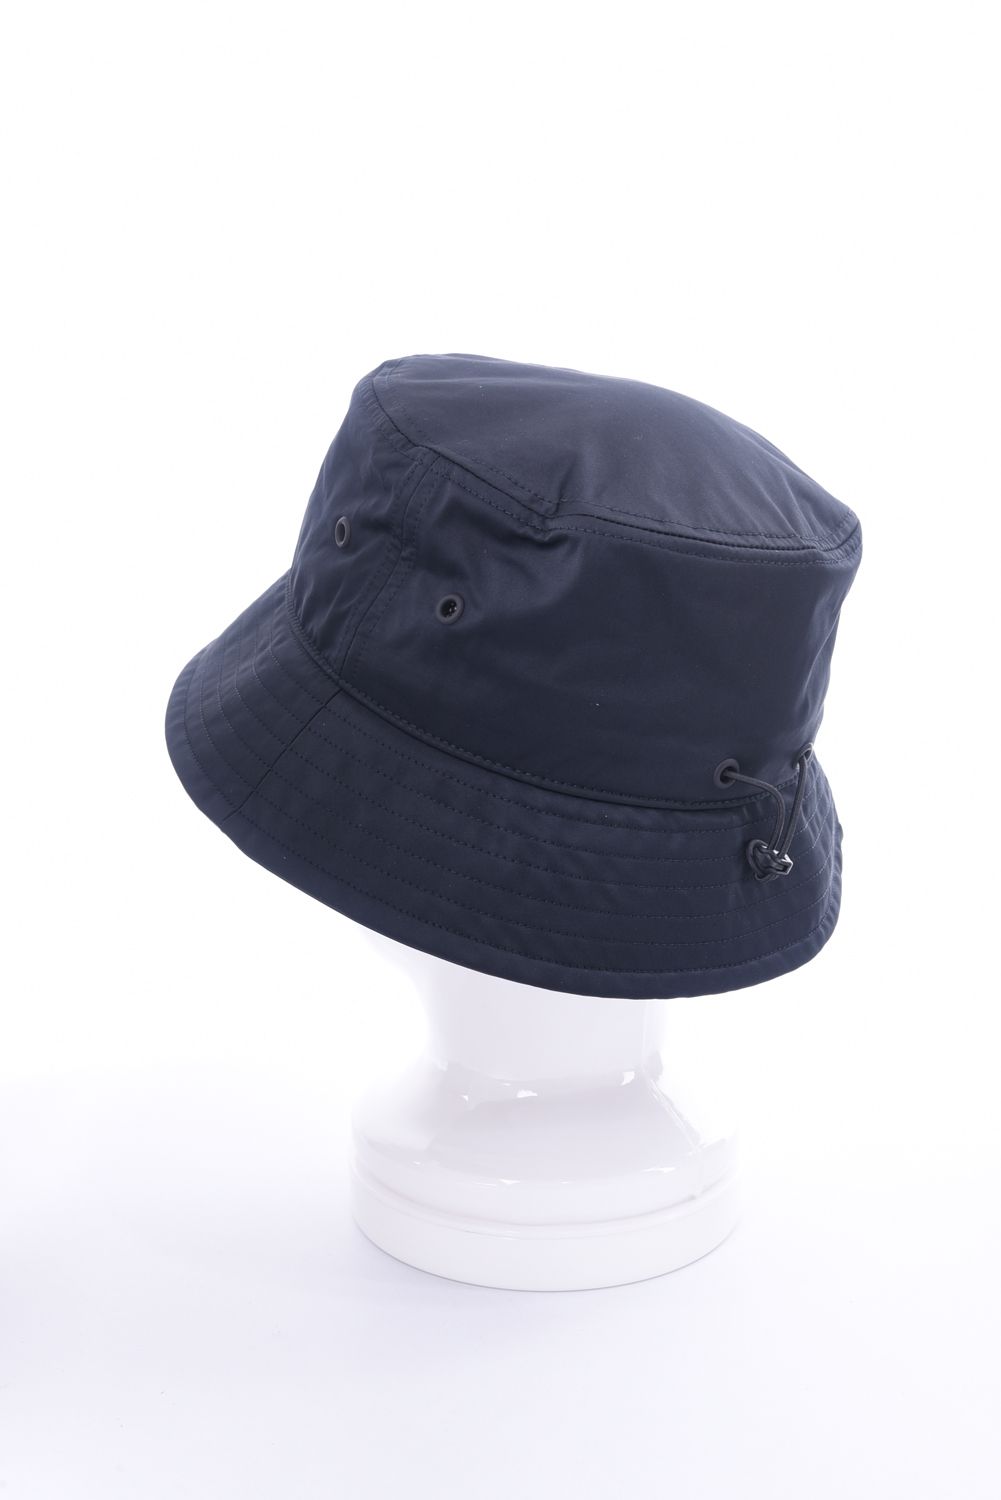 Y-3 - CLASSIC BUCKET HAT / ブランドロゴ バケットハット ブラック | gossip